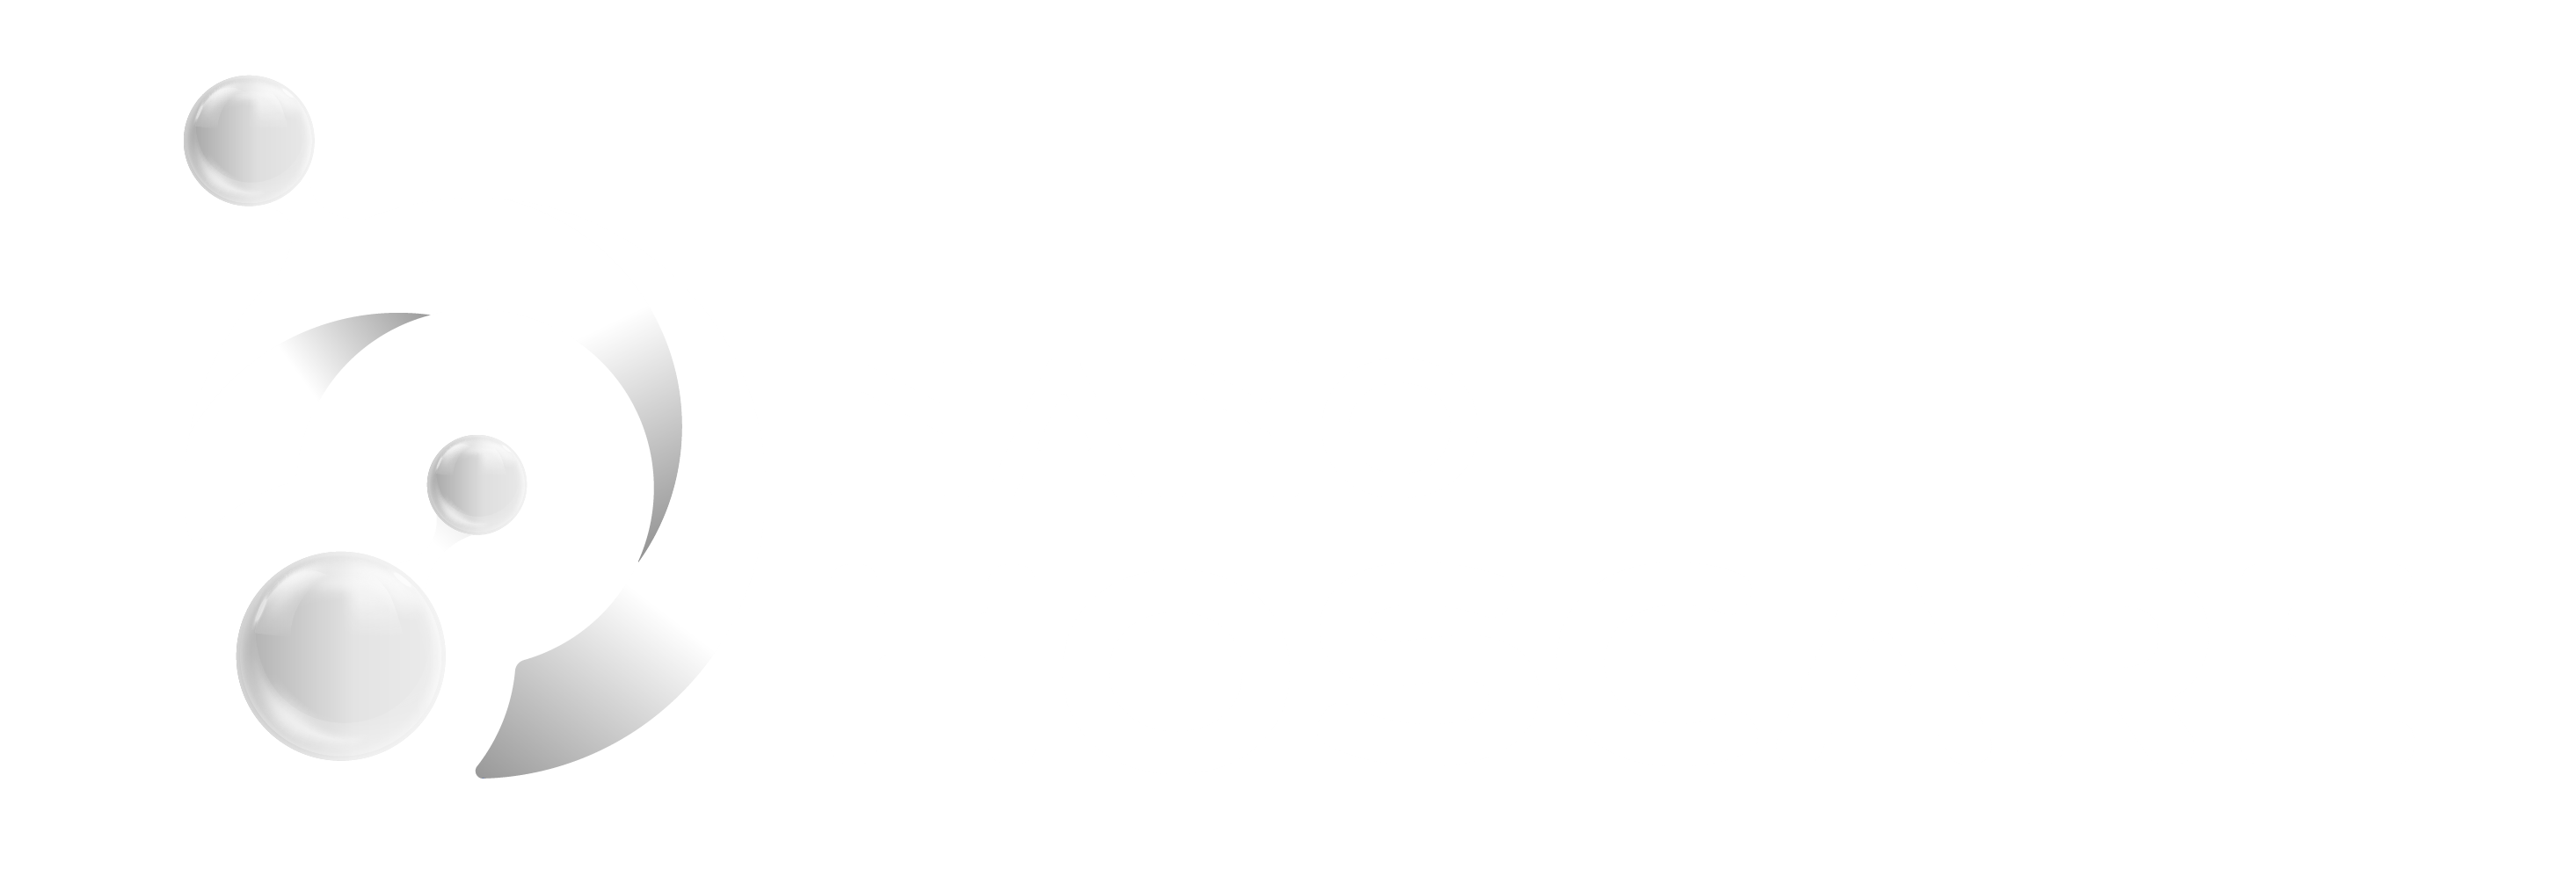 Nano HOSCARE